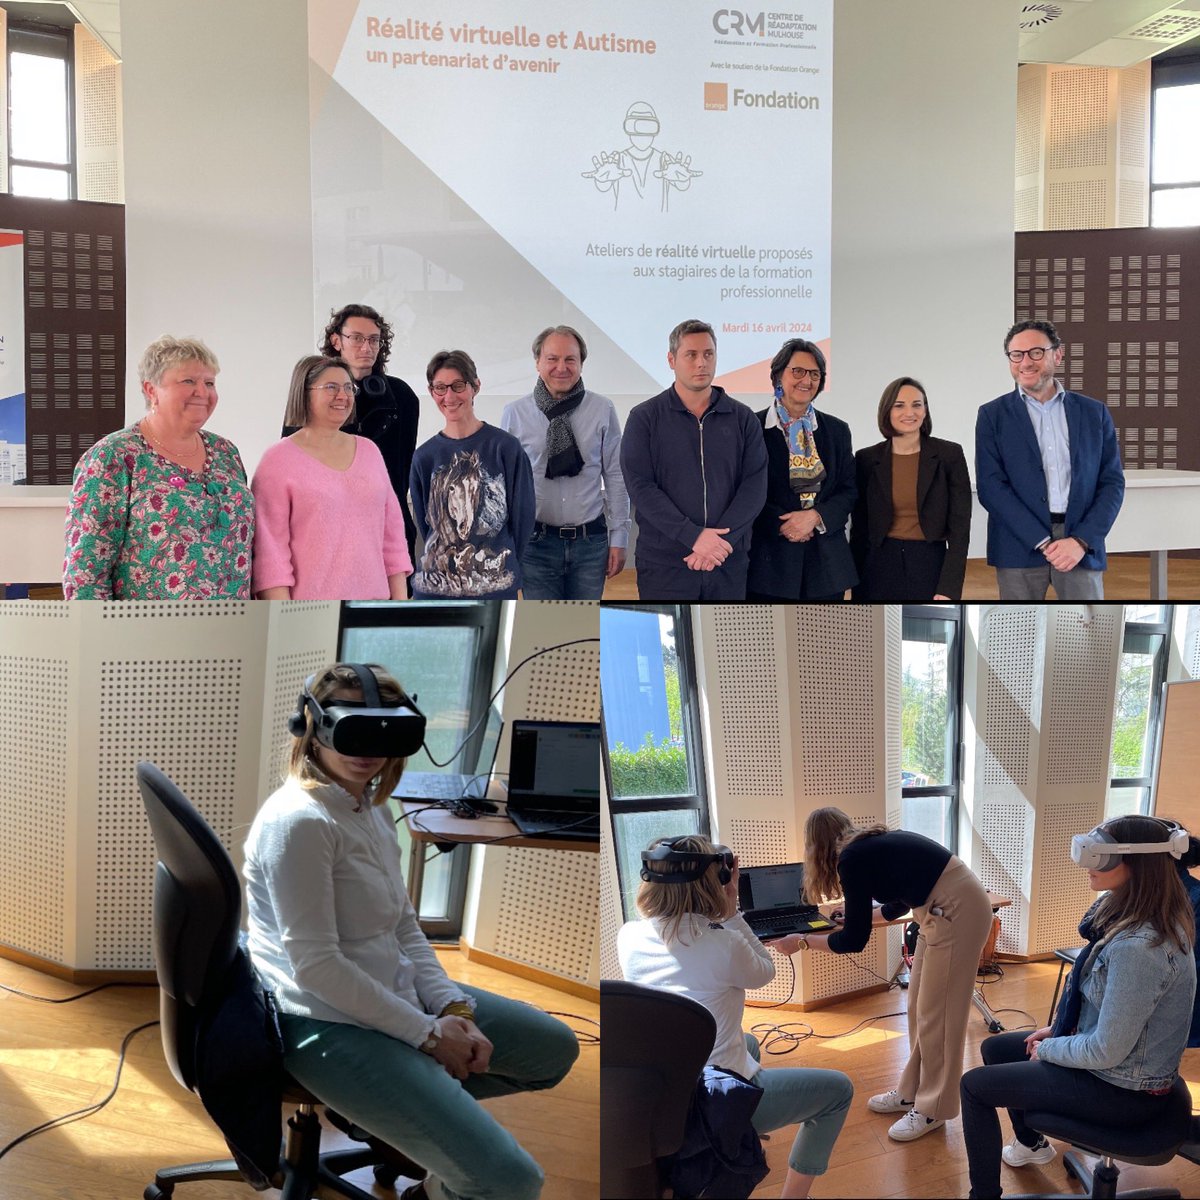 La Fondation Orange soutient le Centre de Réadaptation de Mulhouse dans son projet de création d'Ateliers de réalité virtuelle 💻 Ce qui a permis l'acquisition de plusieurs logiciels dédiés.